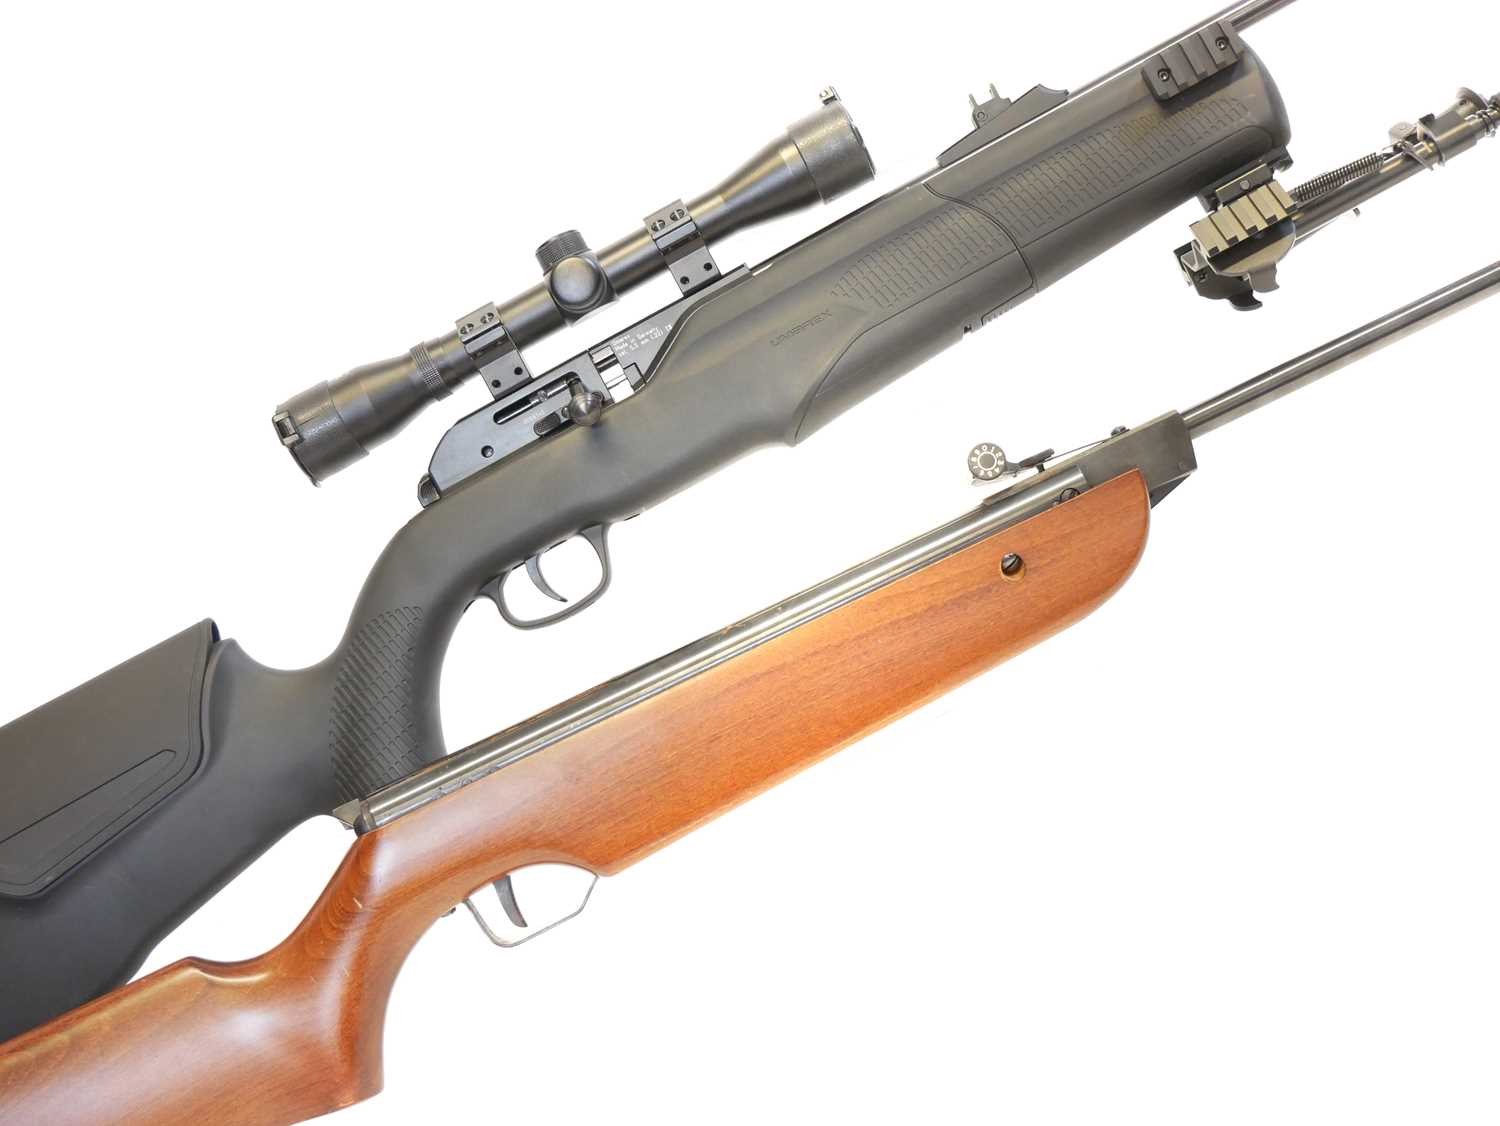 Lot 157 - Umarex 850 M2 .22 air rifle and a Cometa - 300 .22 air rifle